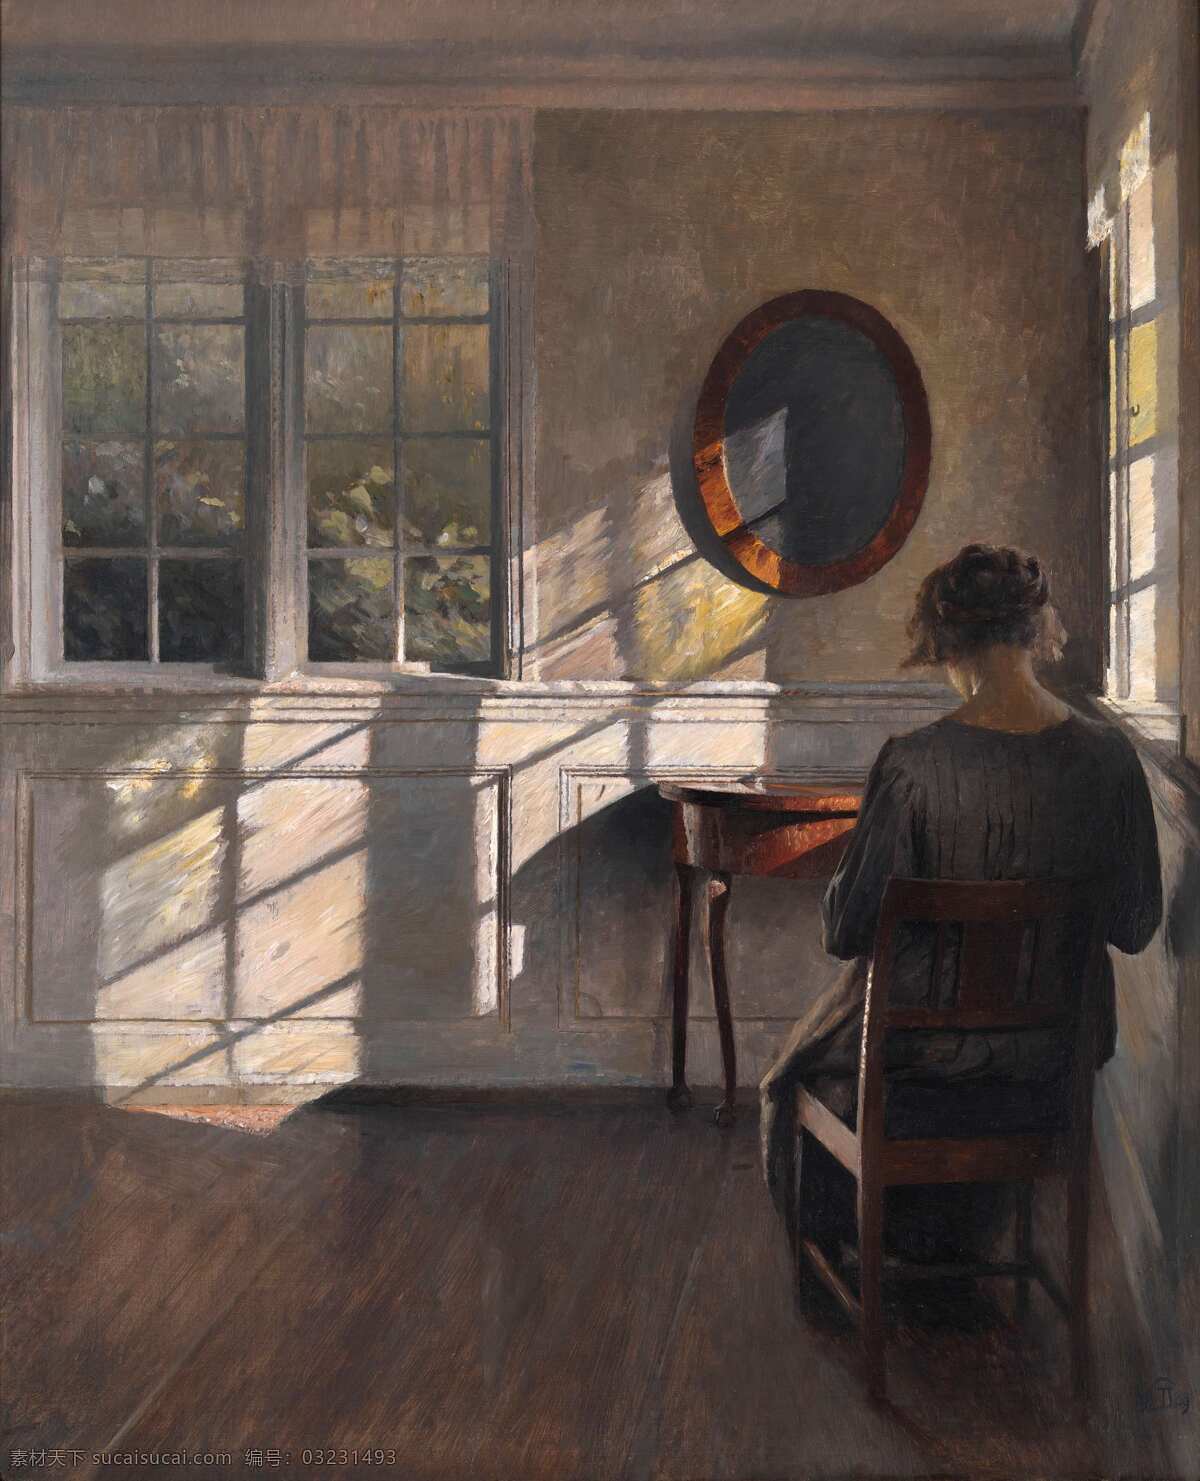 室内油画 阳光 女人 镜子 窗子 坐像 19世纪油画 油画 绘画书法 文化艺术